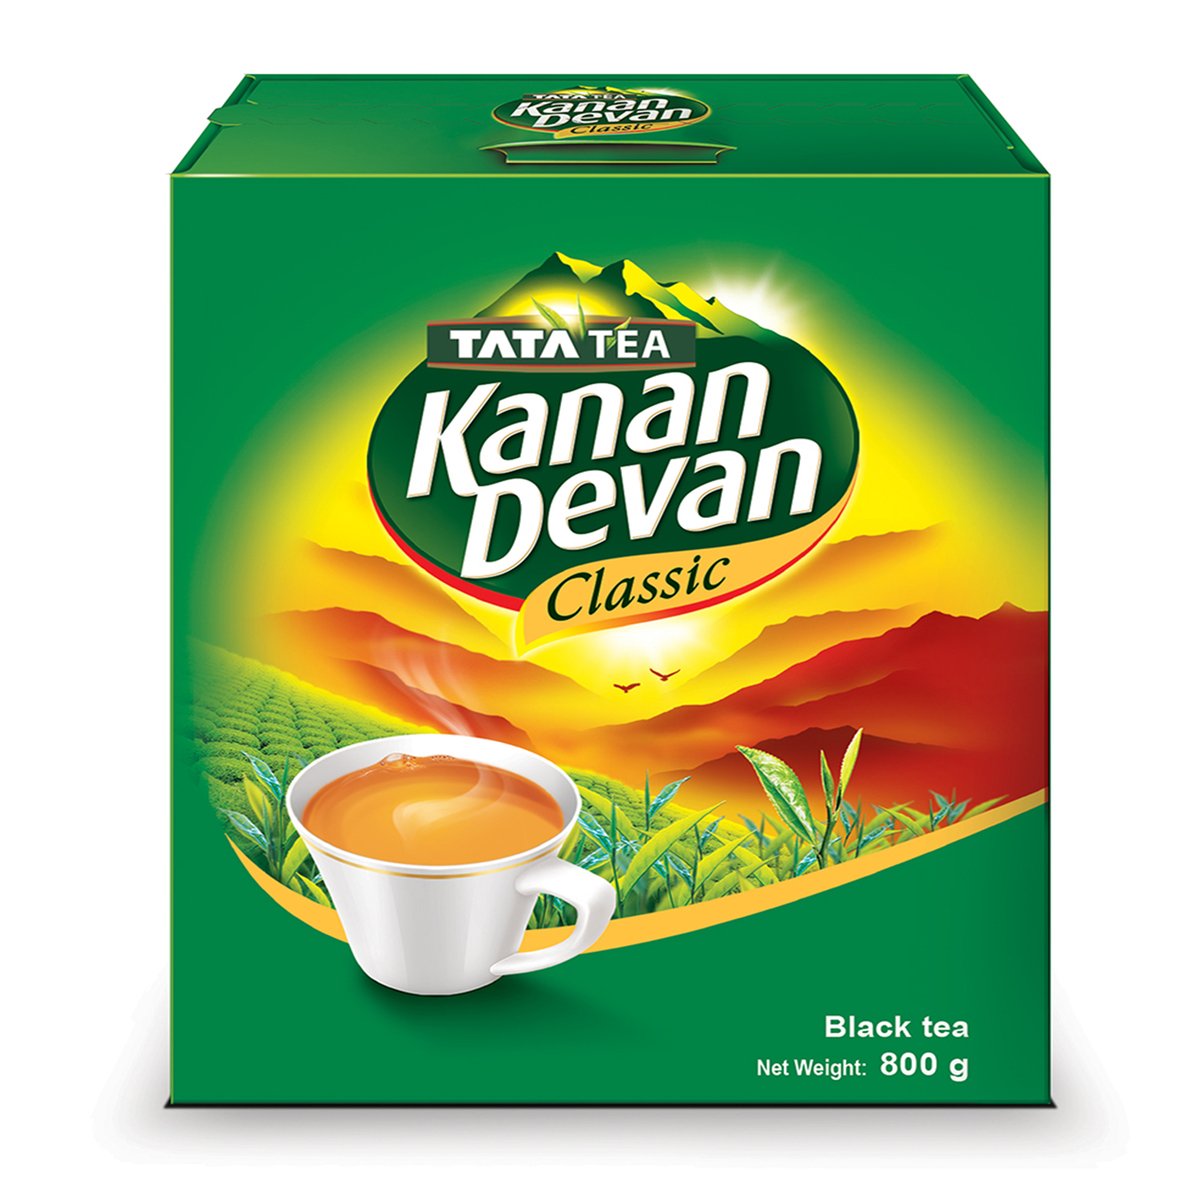 Kanan Devan Tea Dust, 800 g